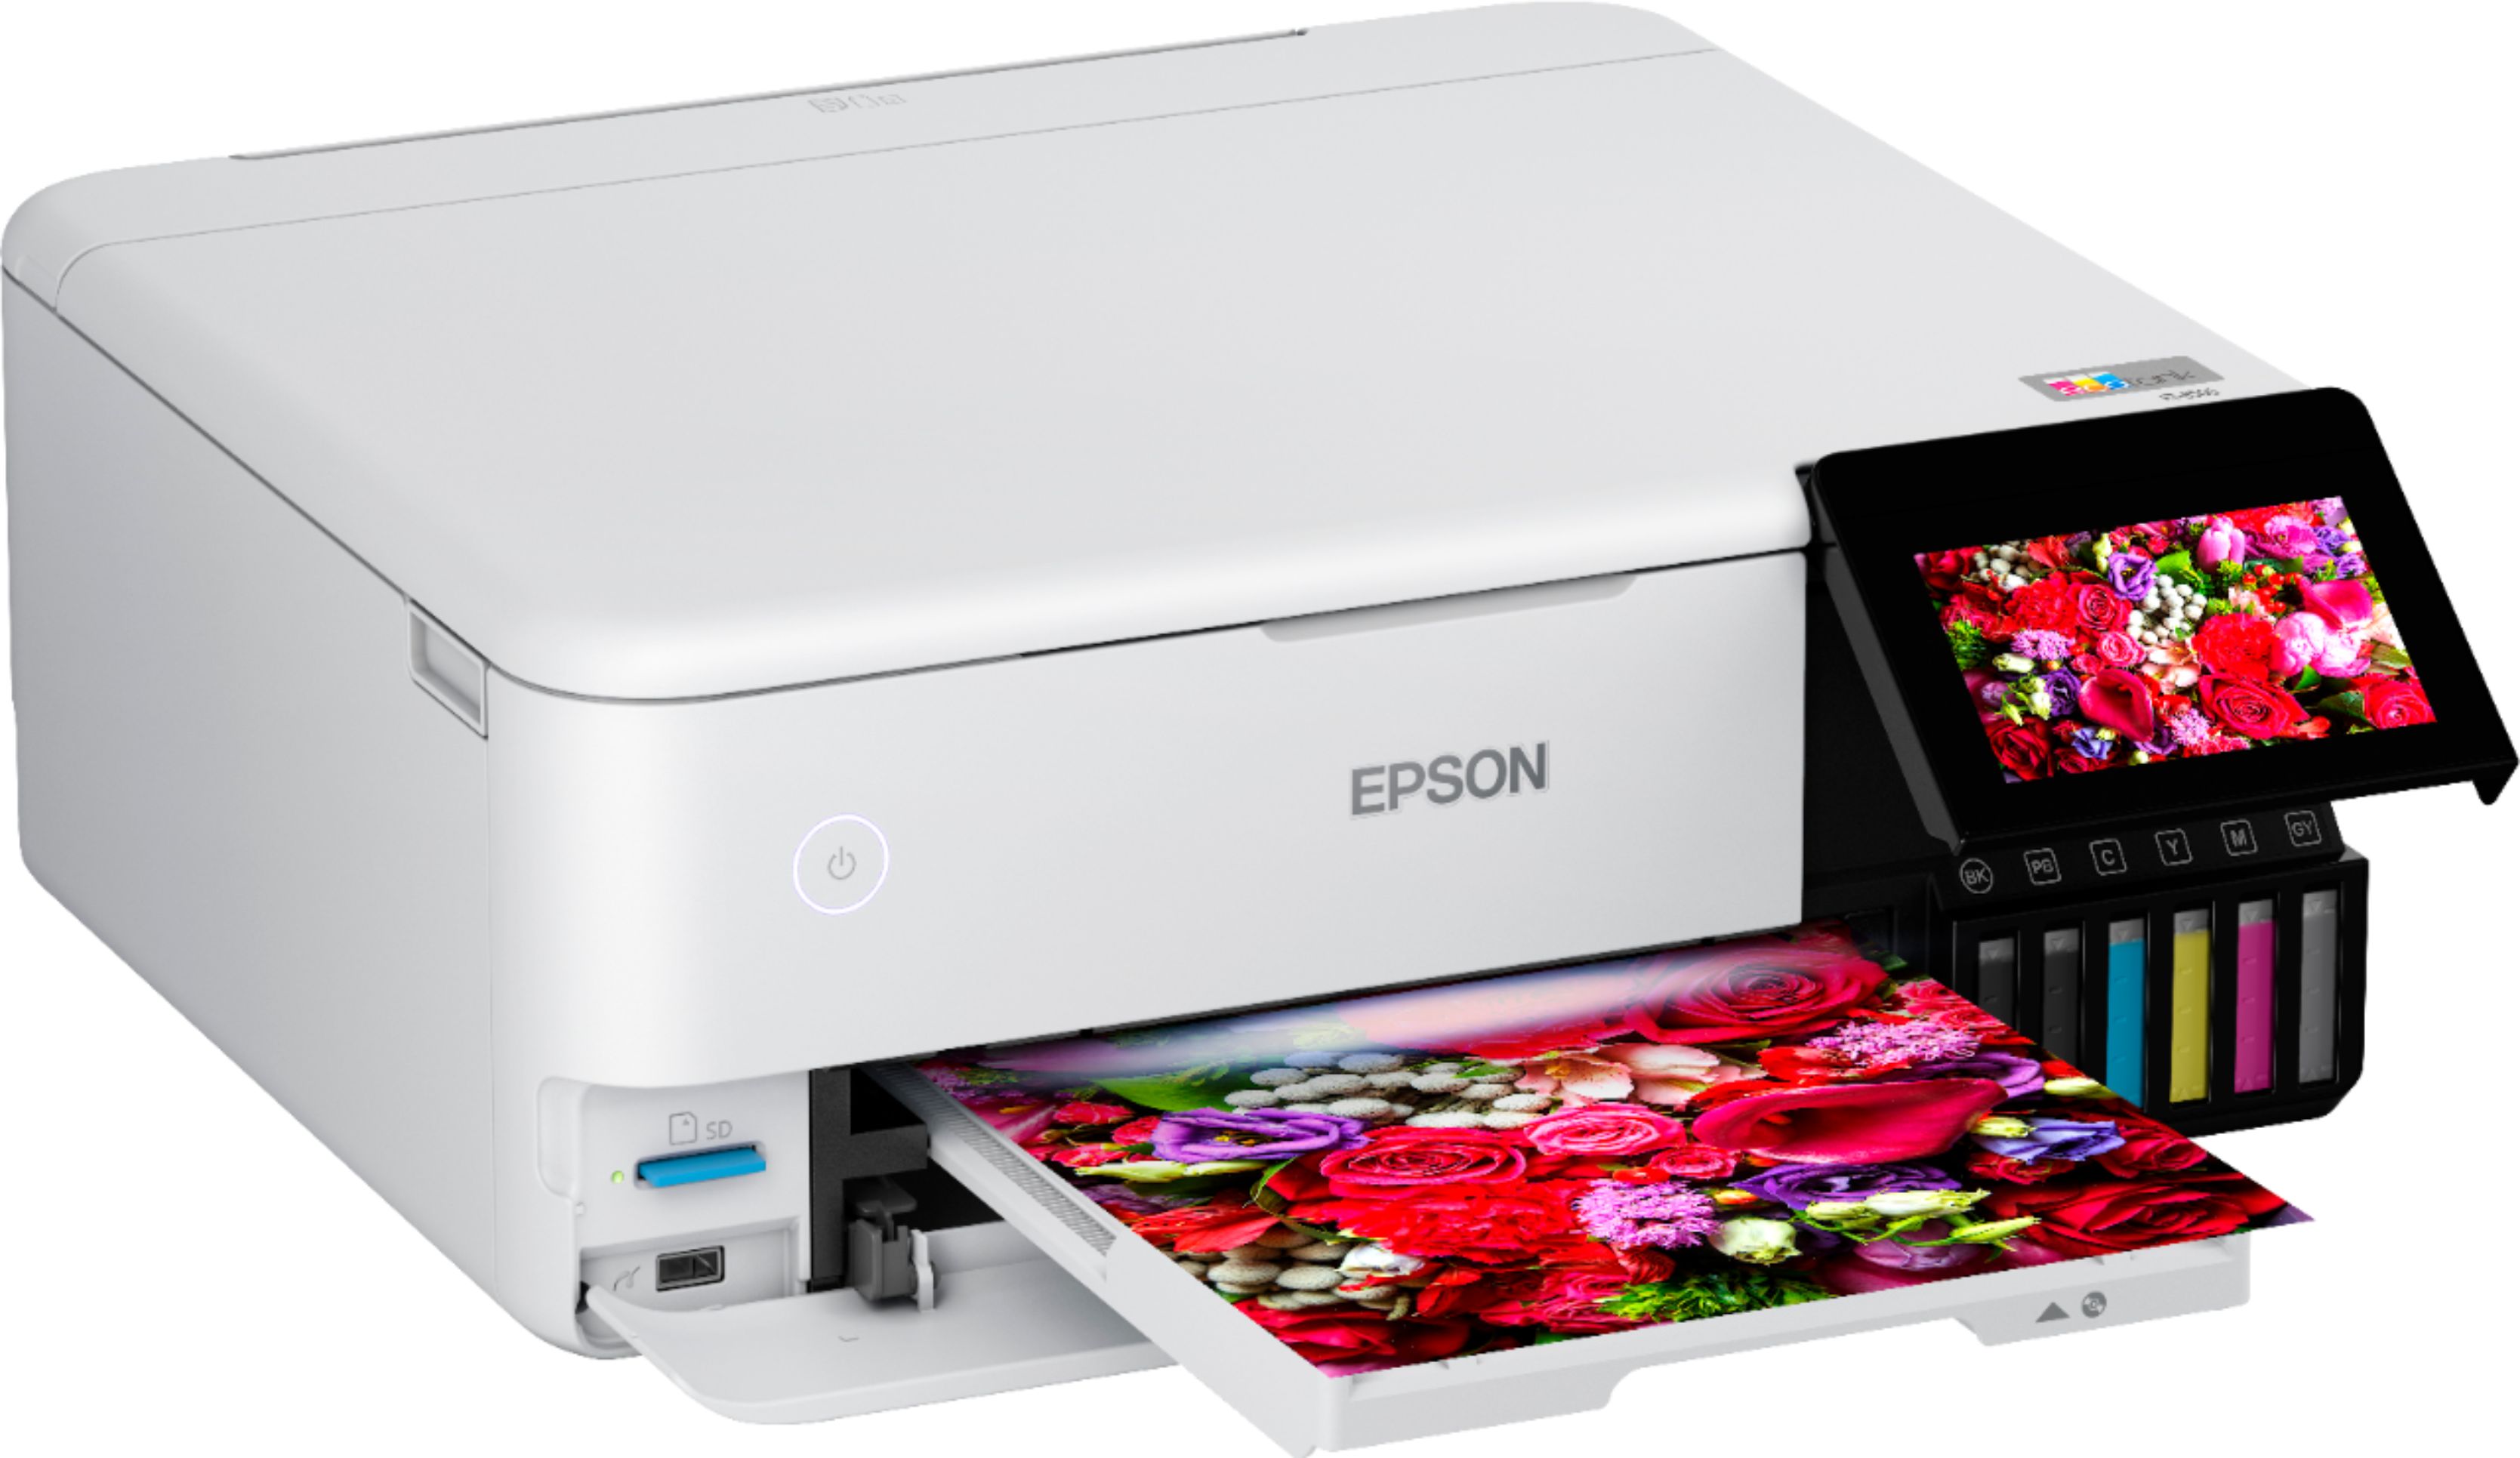 Review: Epson EcoTank Photo ET-8500/ET-8550 – Printerville